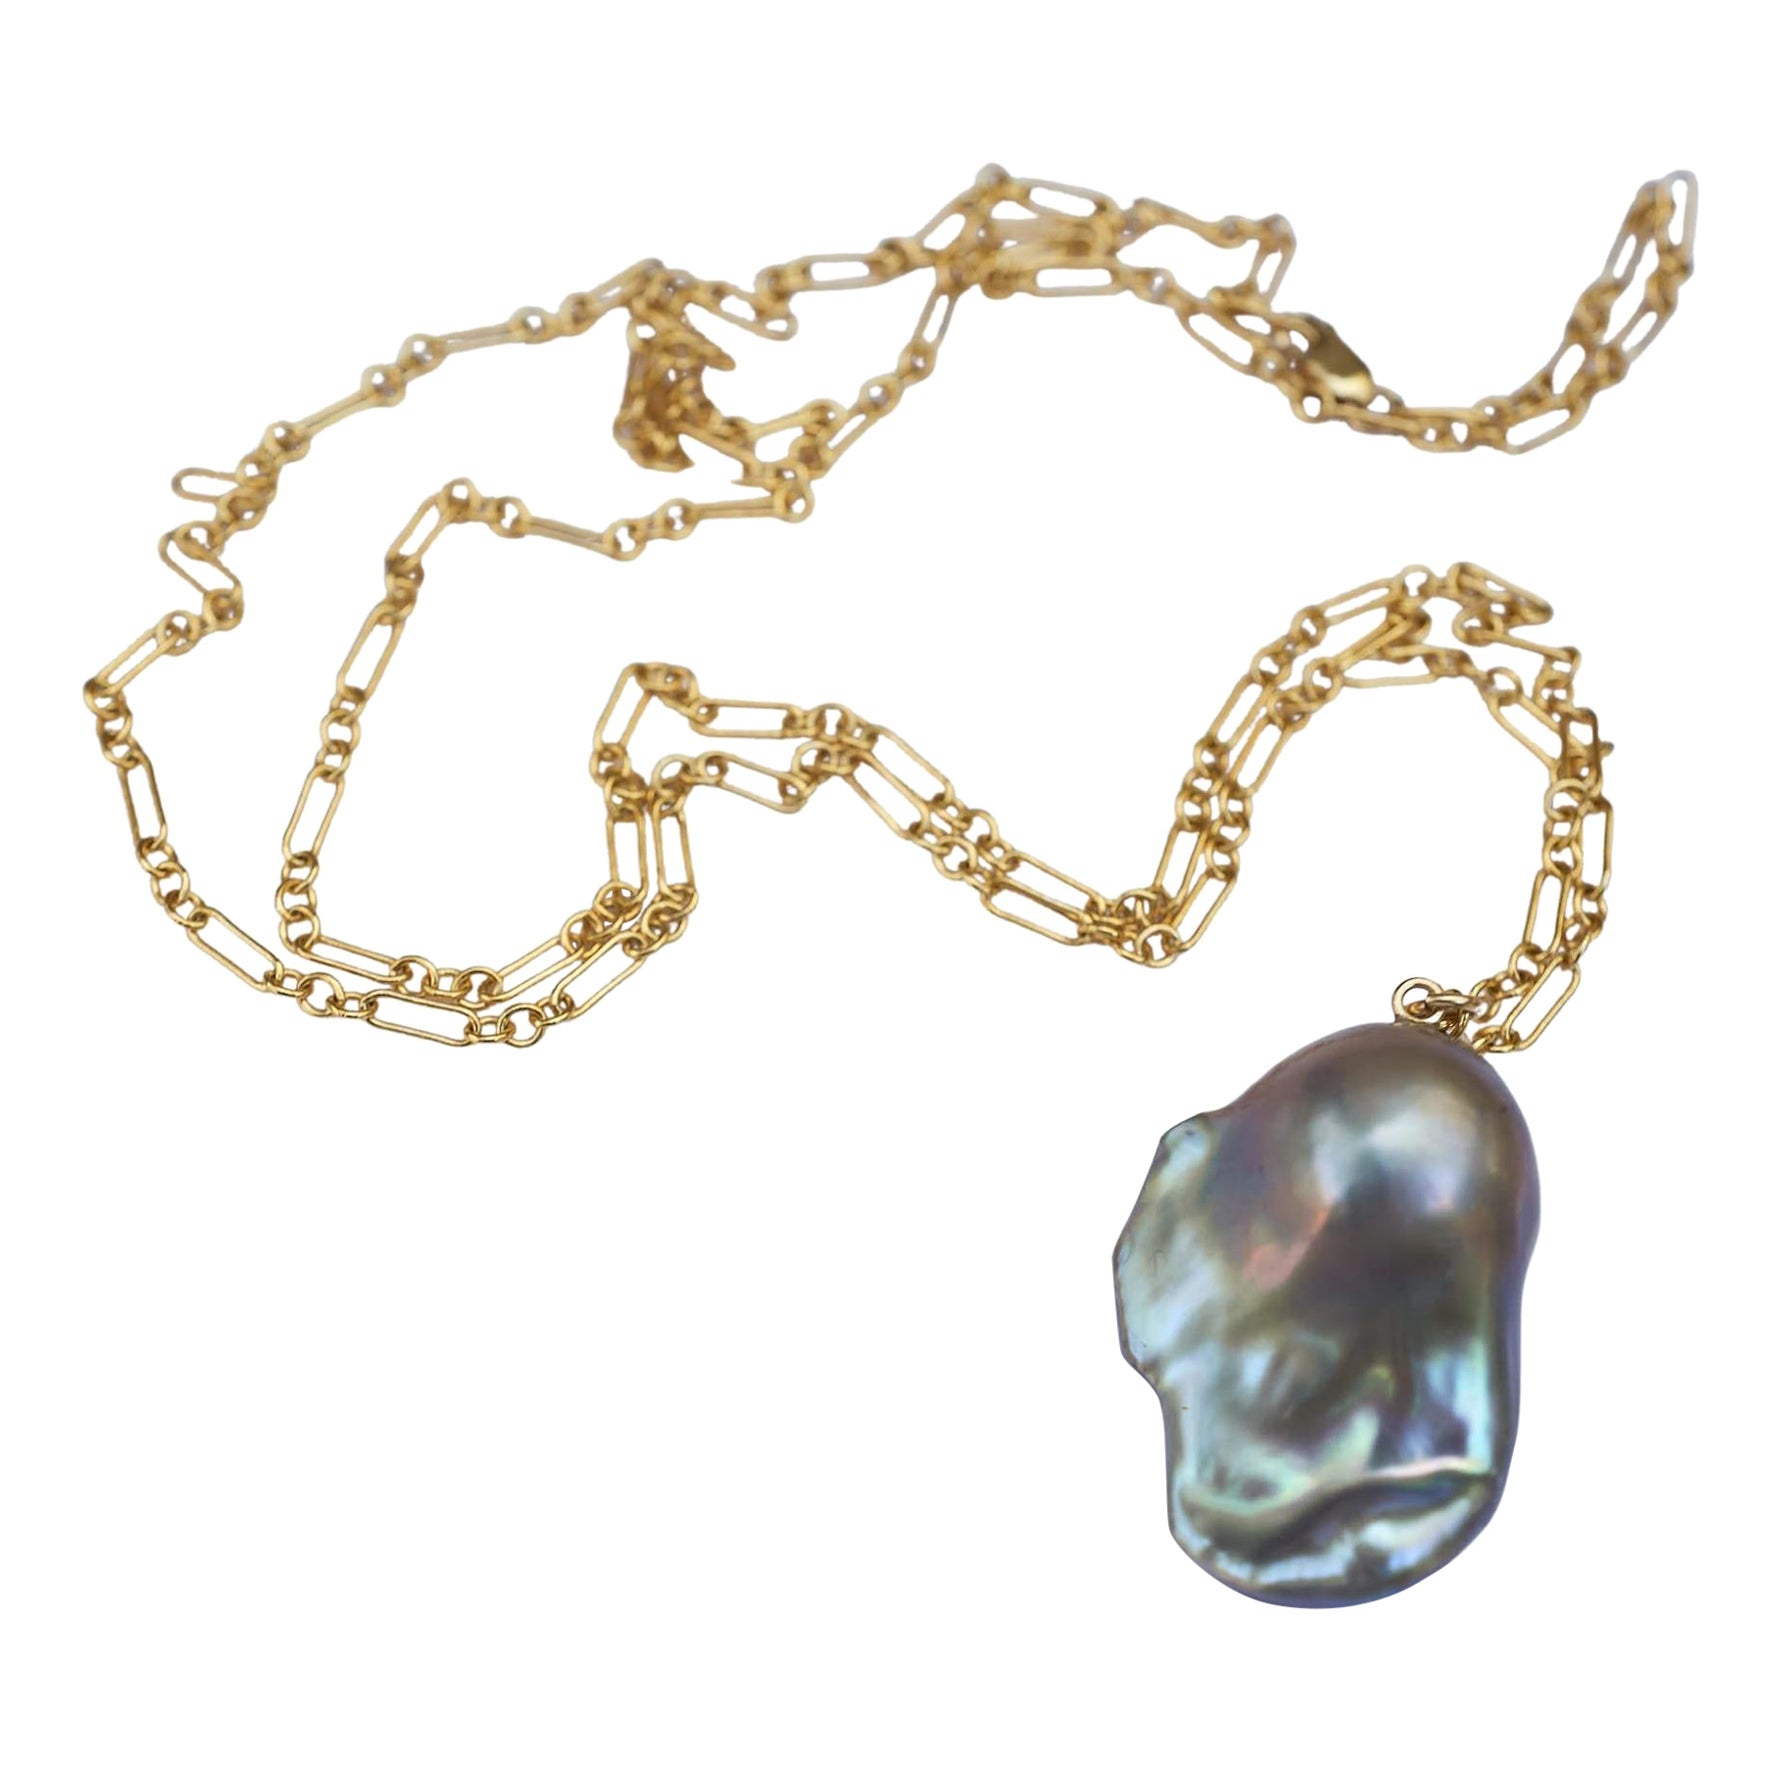 Collier en chaîne avec pendentif en perles grises argentées J Dauphin